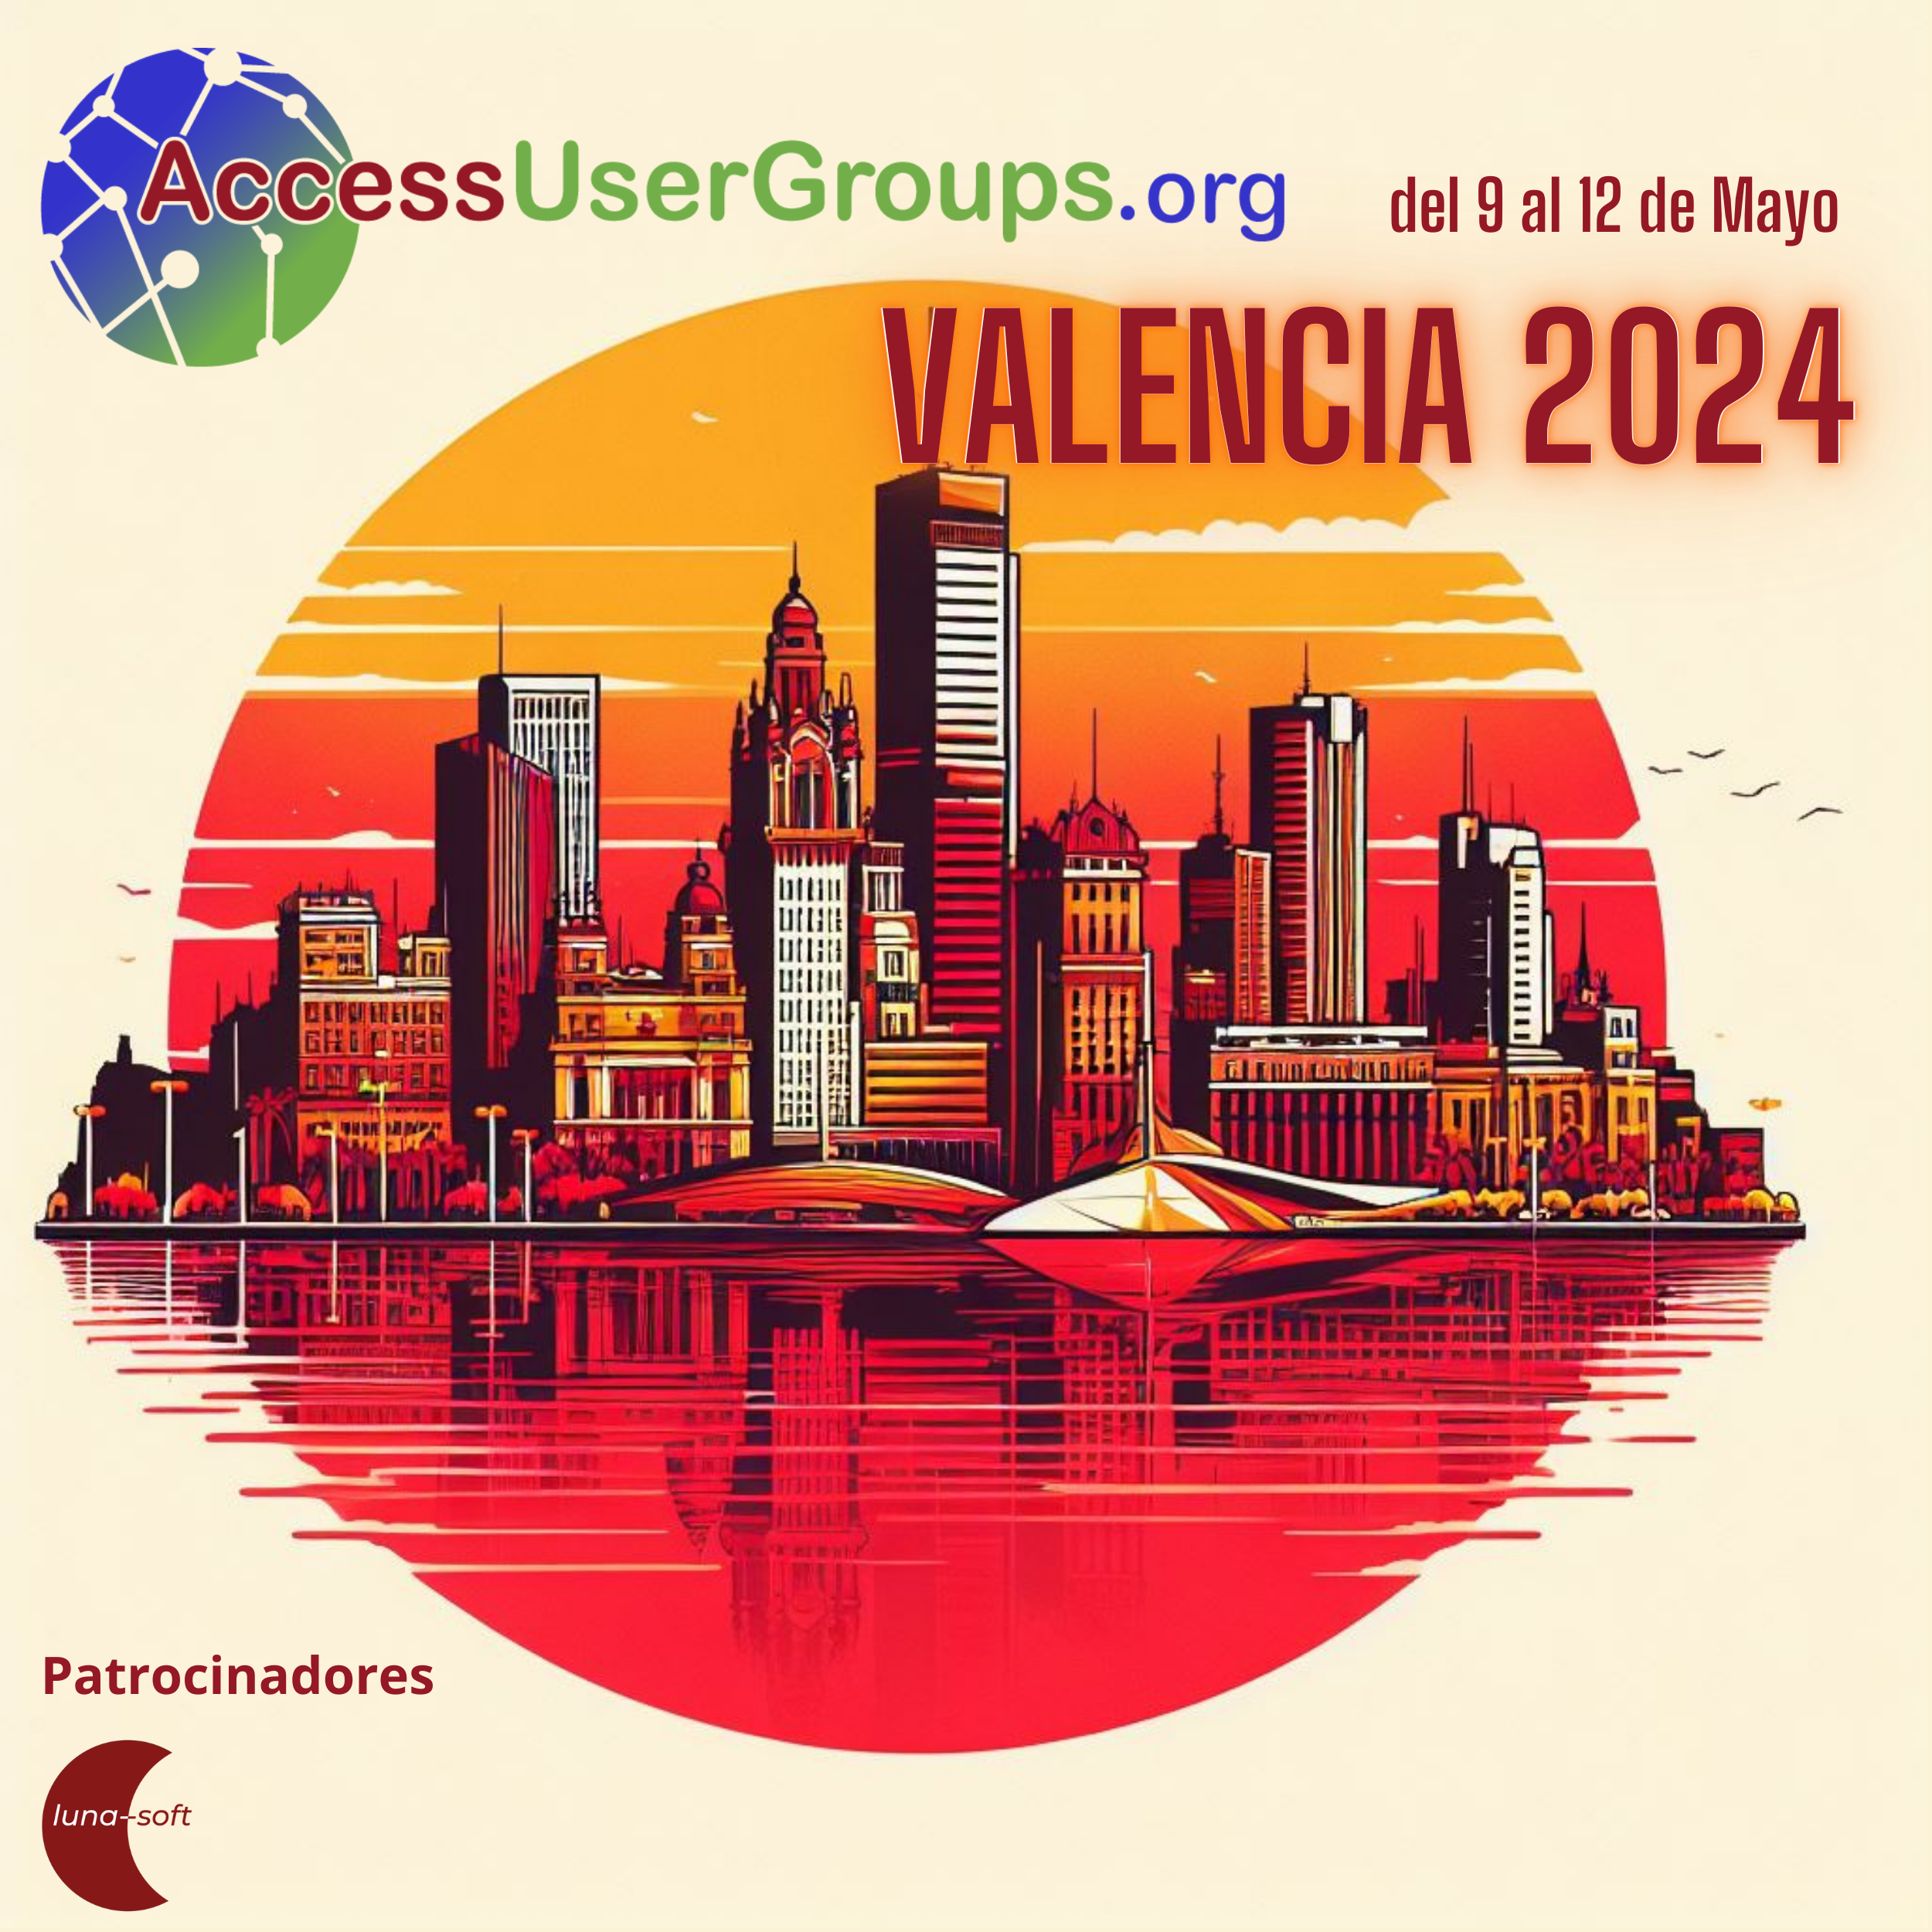 Apuntate al evento Presencial de AUGE en Valencia del 9 al 12 de Mayo